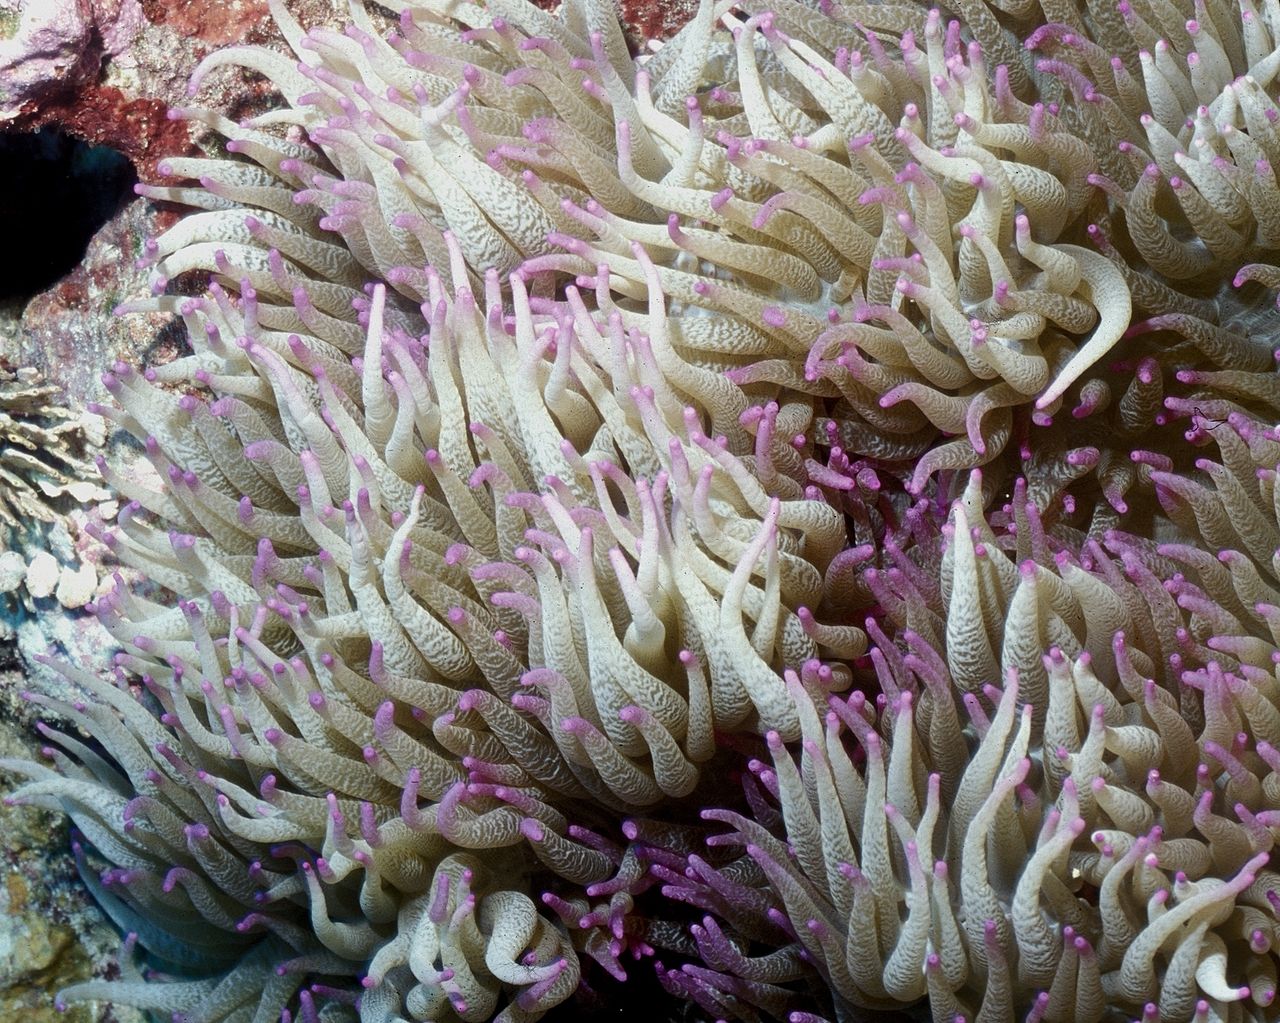 Heteractis Malu waves its long purple-tipped tentacles